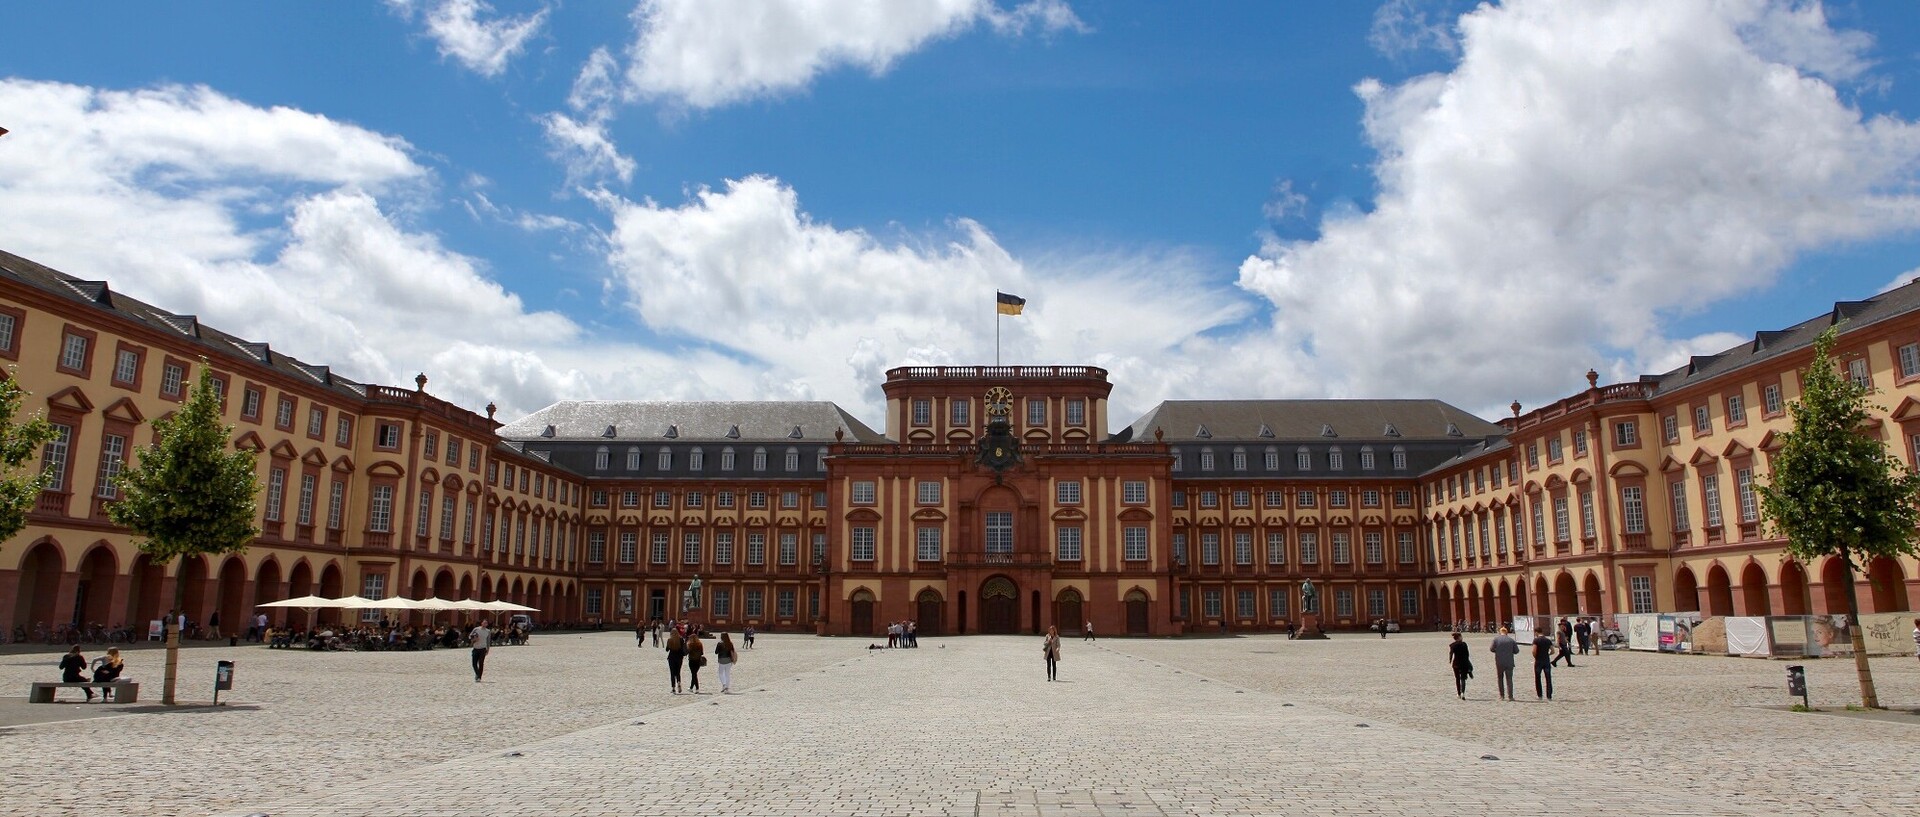 Das Mannheimer Barockschloss und der Ehrenhof mit Blick auf den Mittelbau.